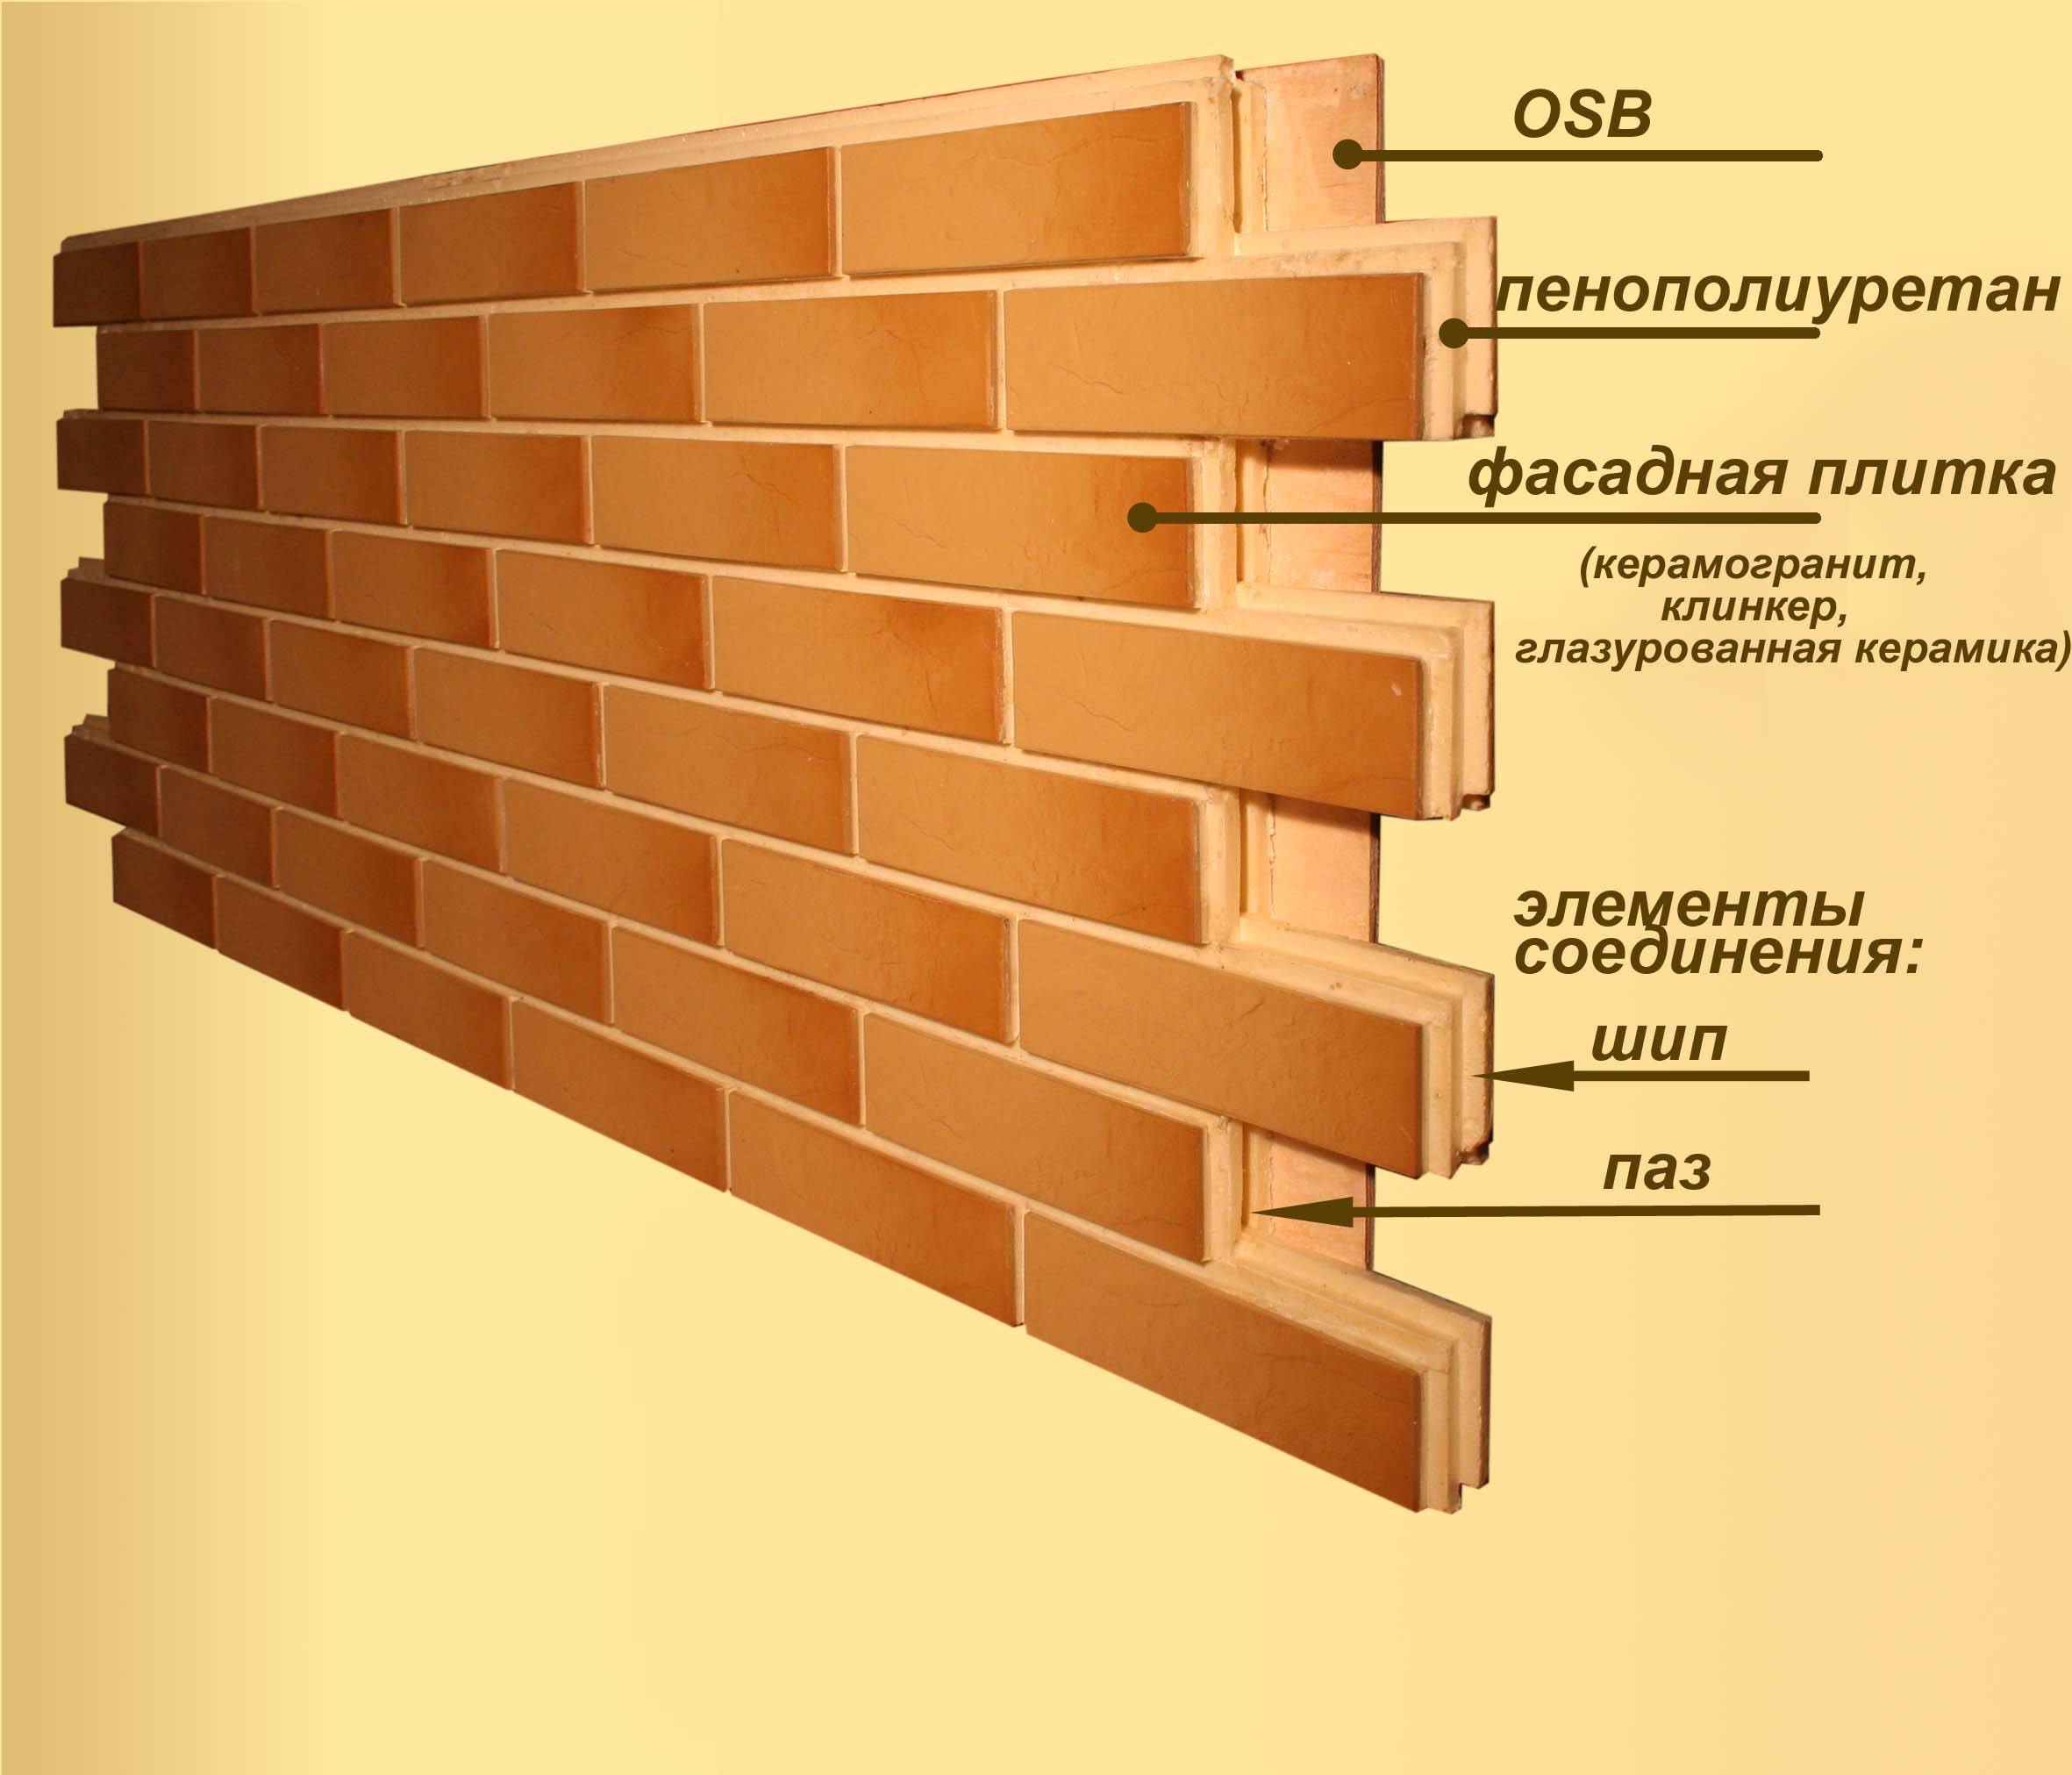 Плюсы и минусы облицовки деревянного дома клинкерными панелями | стройфасад